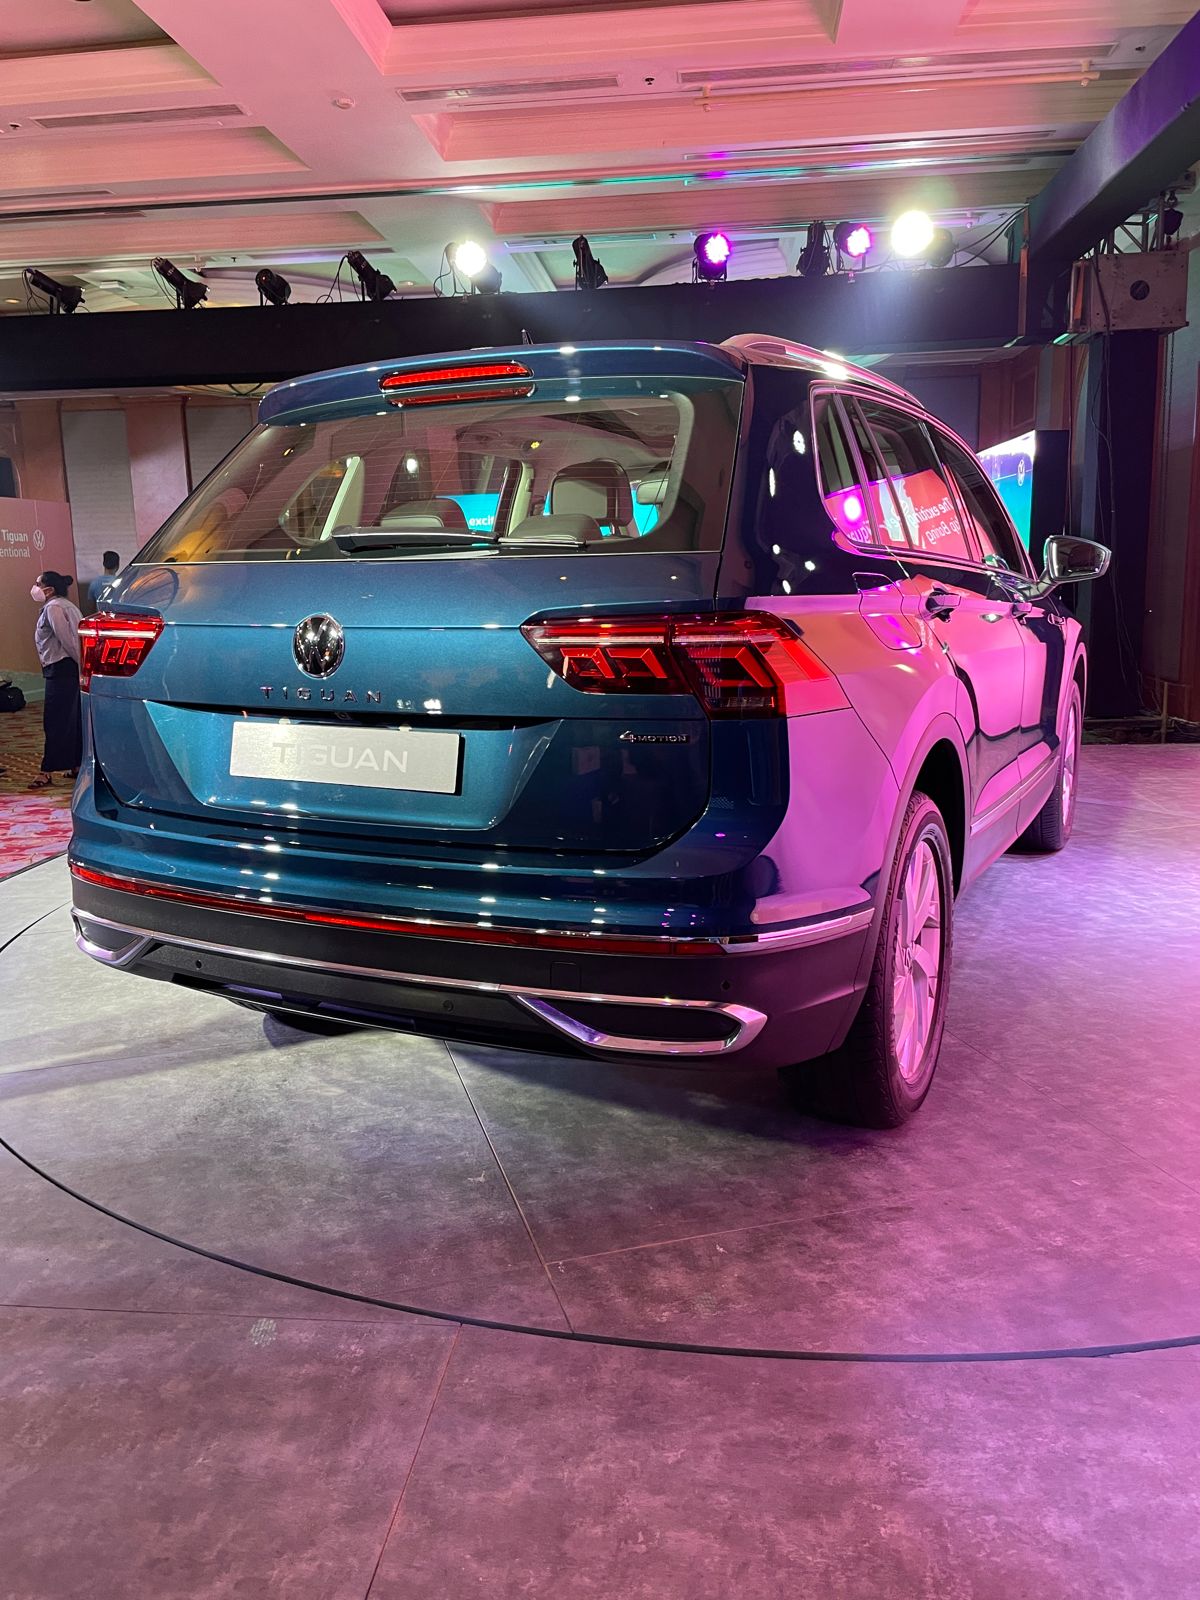 Volkswagen Tiguan First Look Review: SUV में फीचर्स, लुक और प्रीमियम की तलाश करने वालों के लिए खास है Volkswagen की नई Tiguan